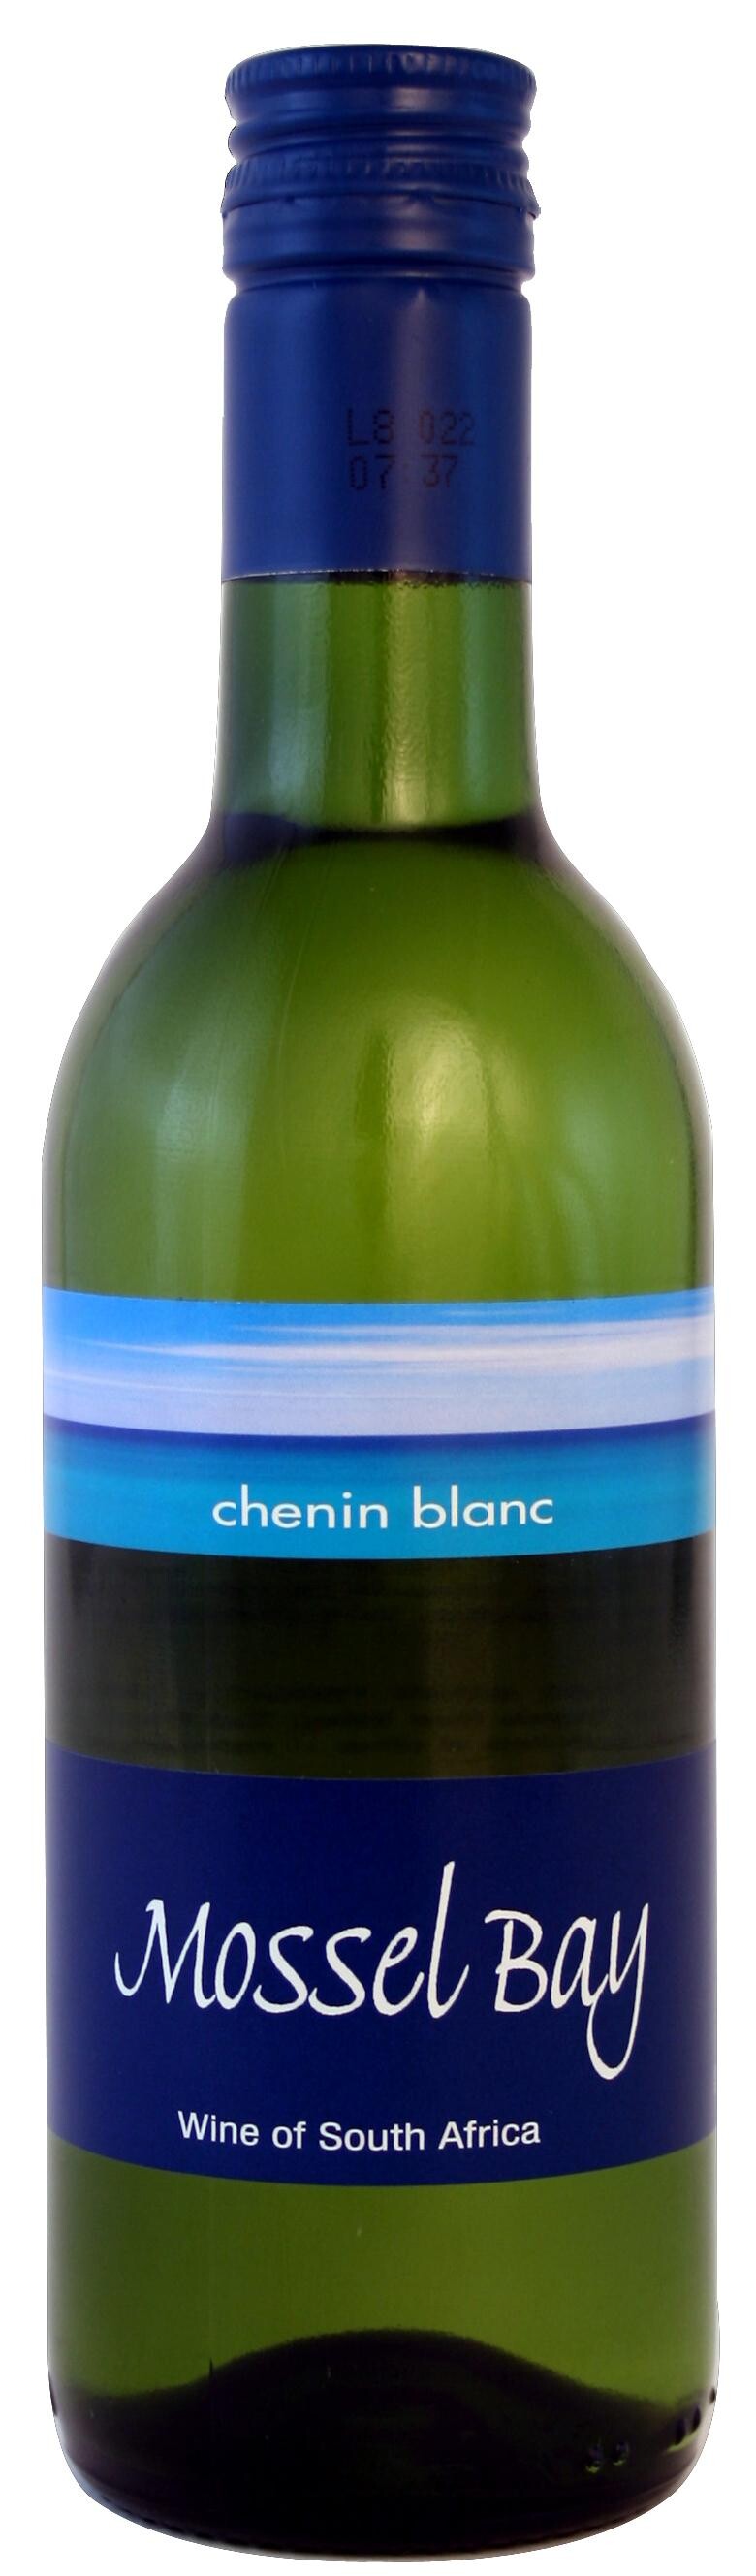 Mosselbay Chenin Blanc 25cl wine South-Africa srew cap